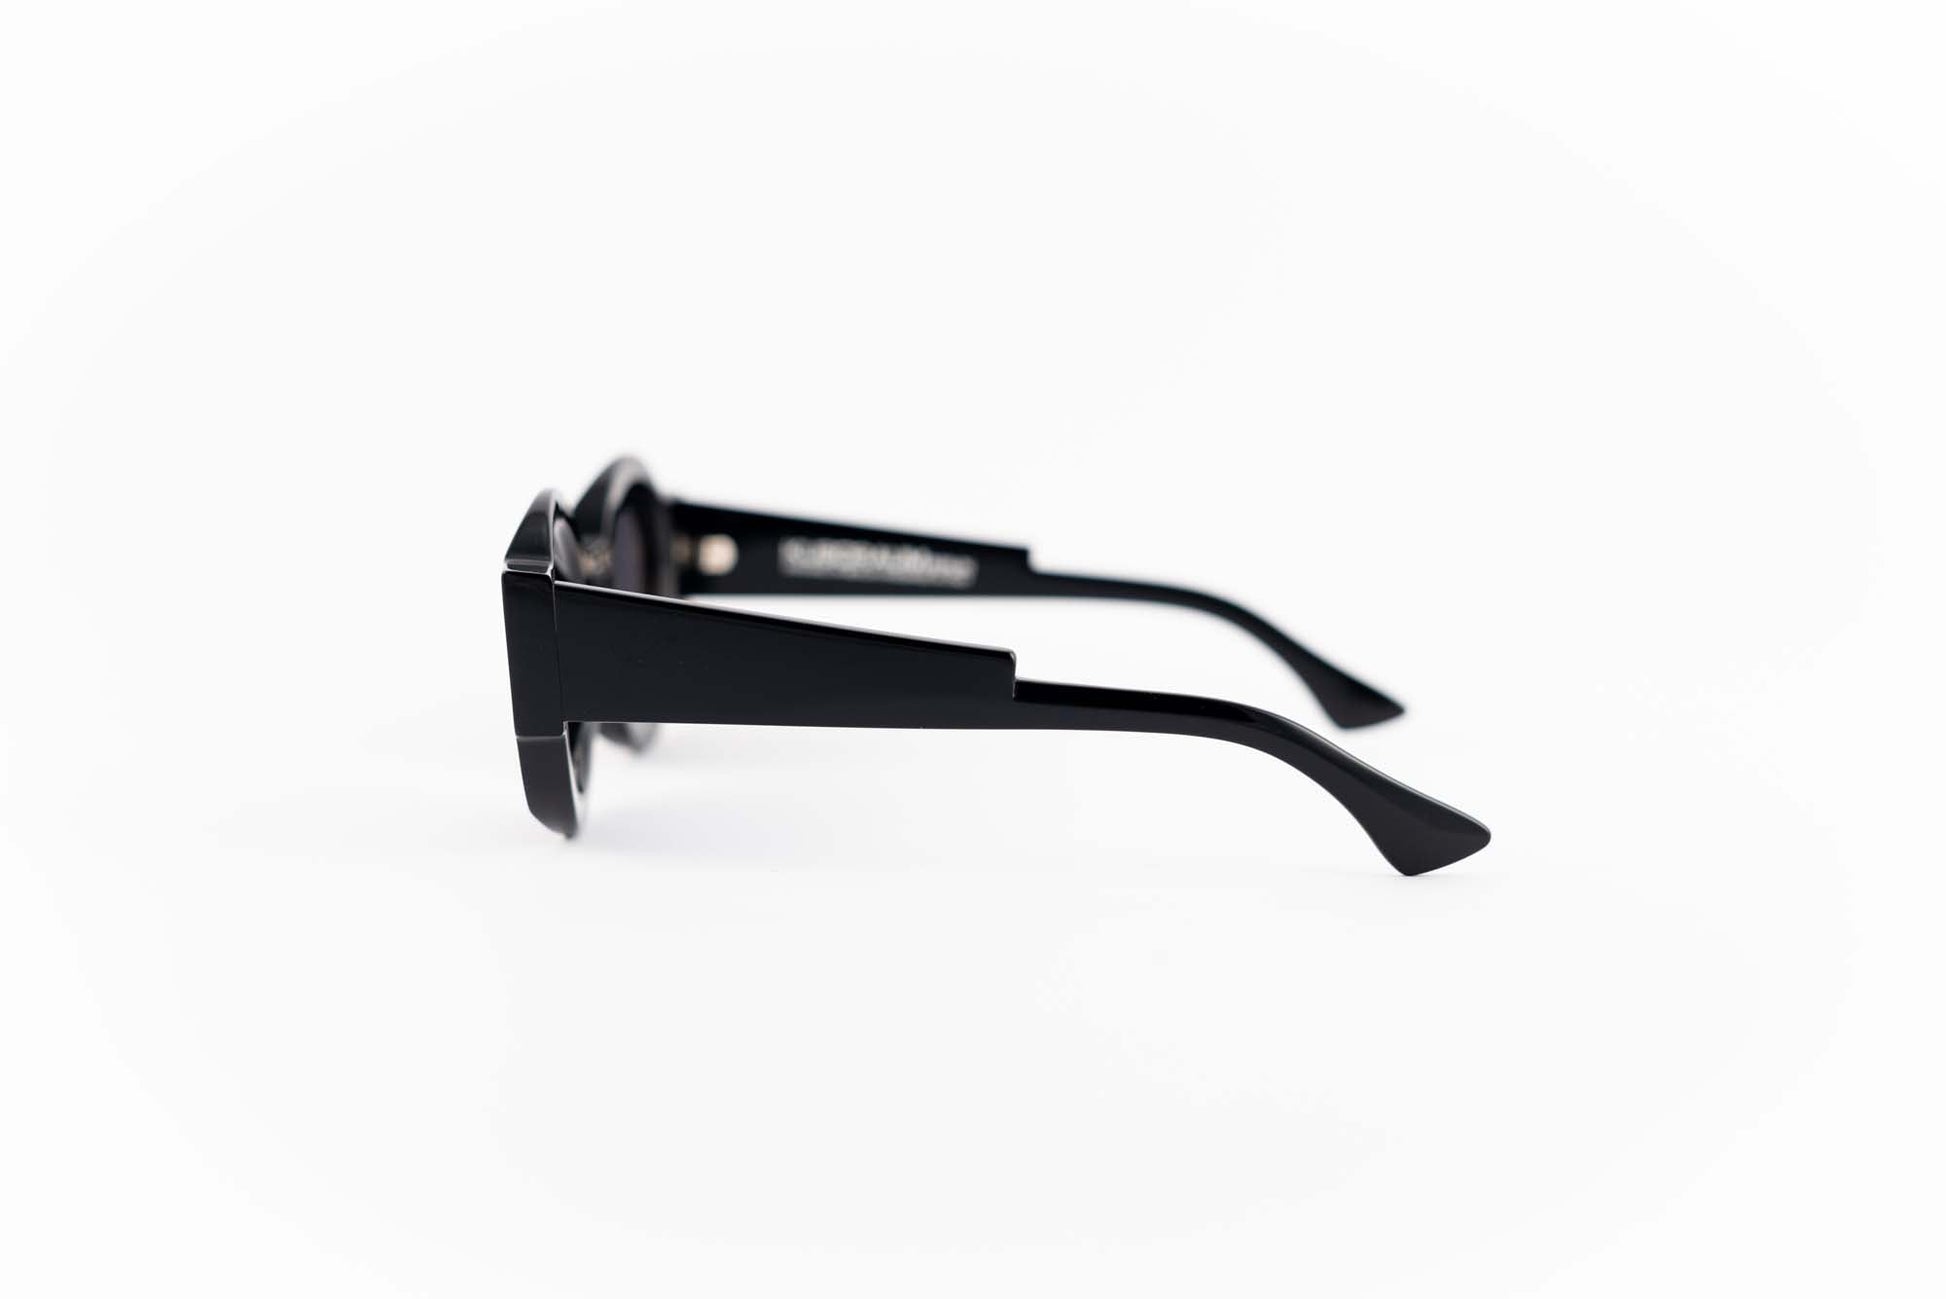 Kuboraum Occhiali da sole Nero / Acetato / poligonale Kuboraum MASKE X22 BS: occhiale in acetato nero poligonale da sole